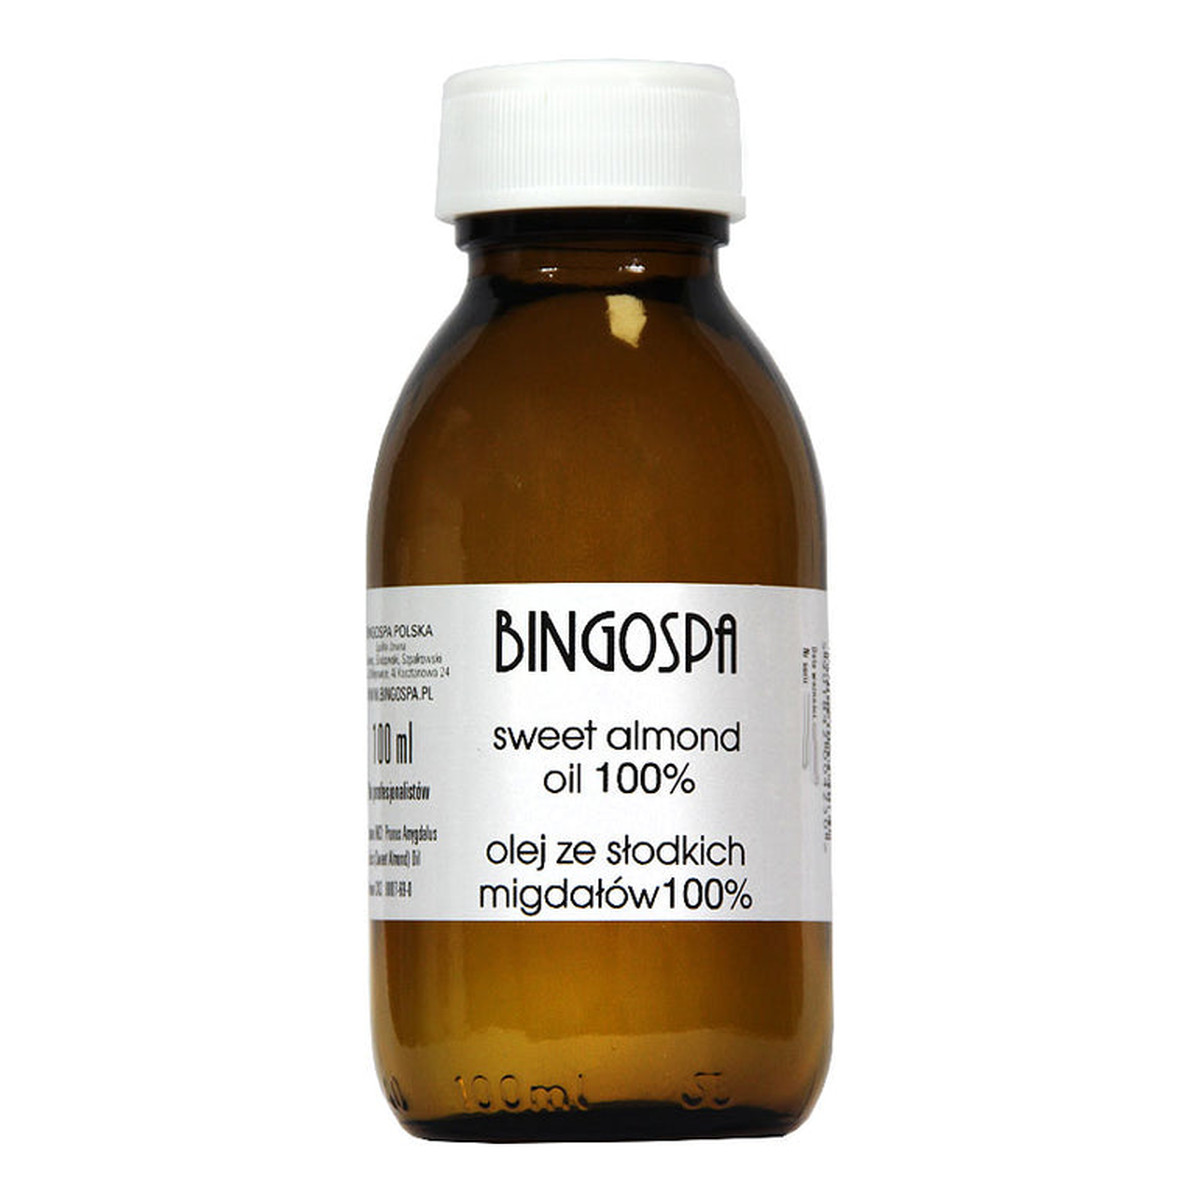 BingoSpa Olej ze słodkich migdałów 100% - Sweet almond oil 100ml